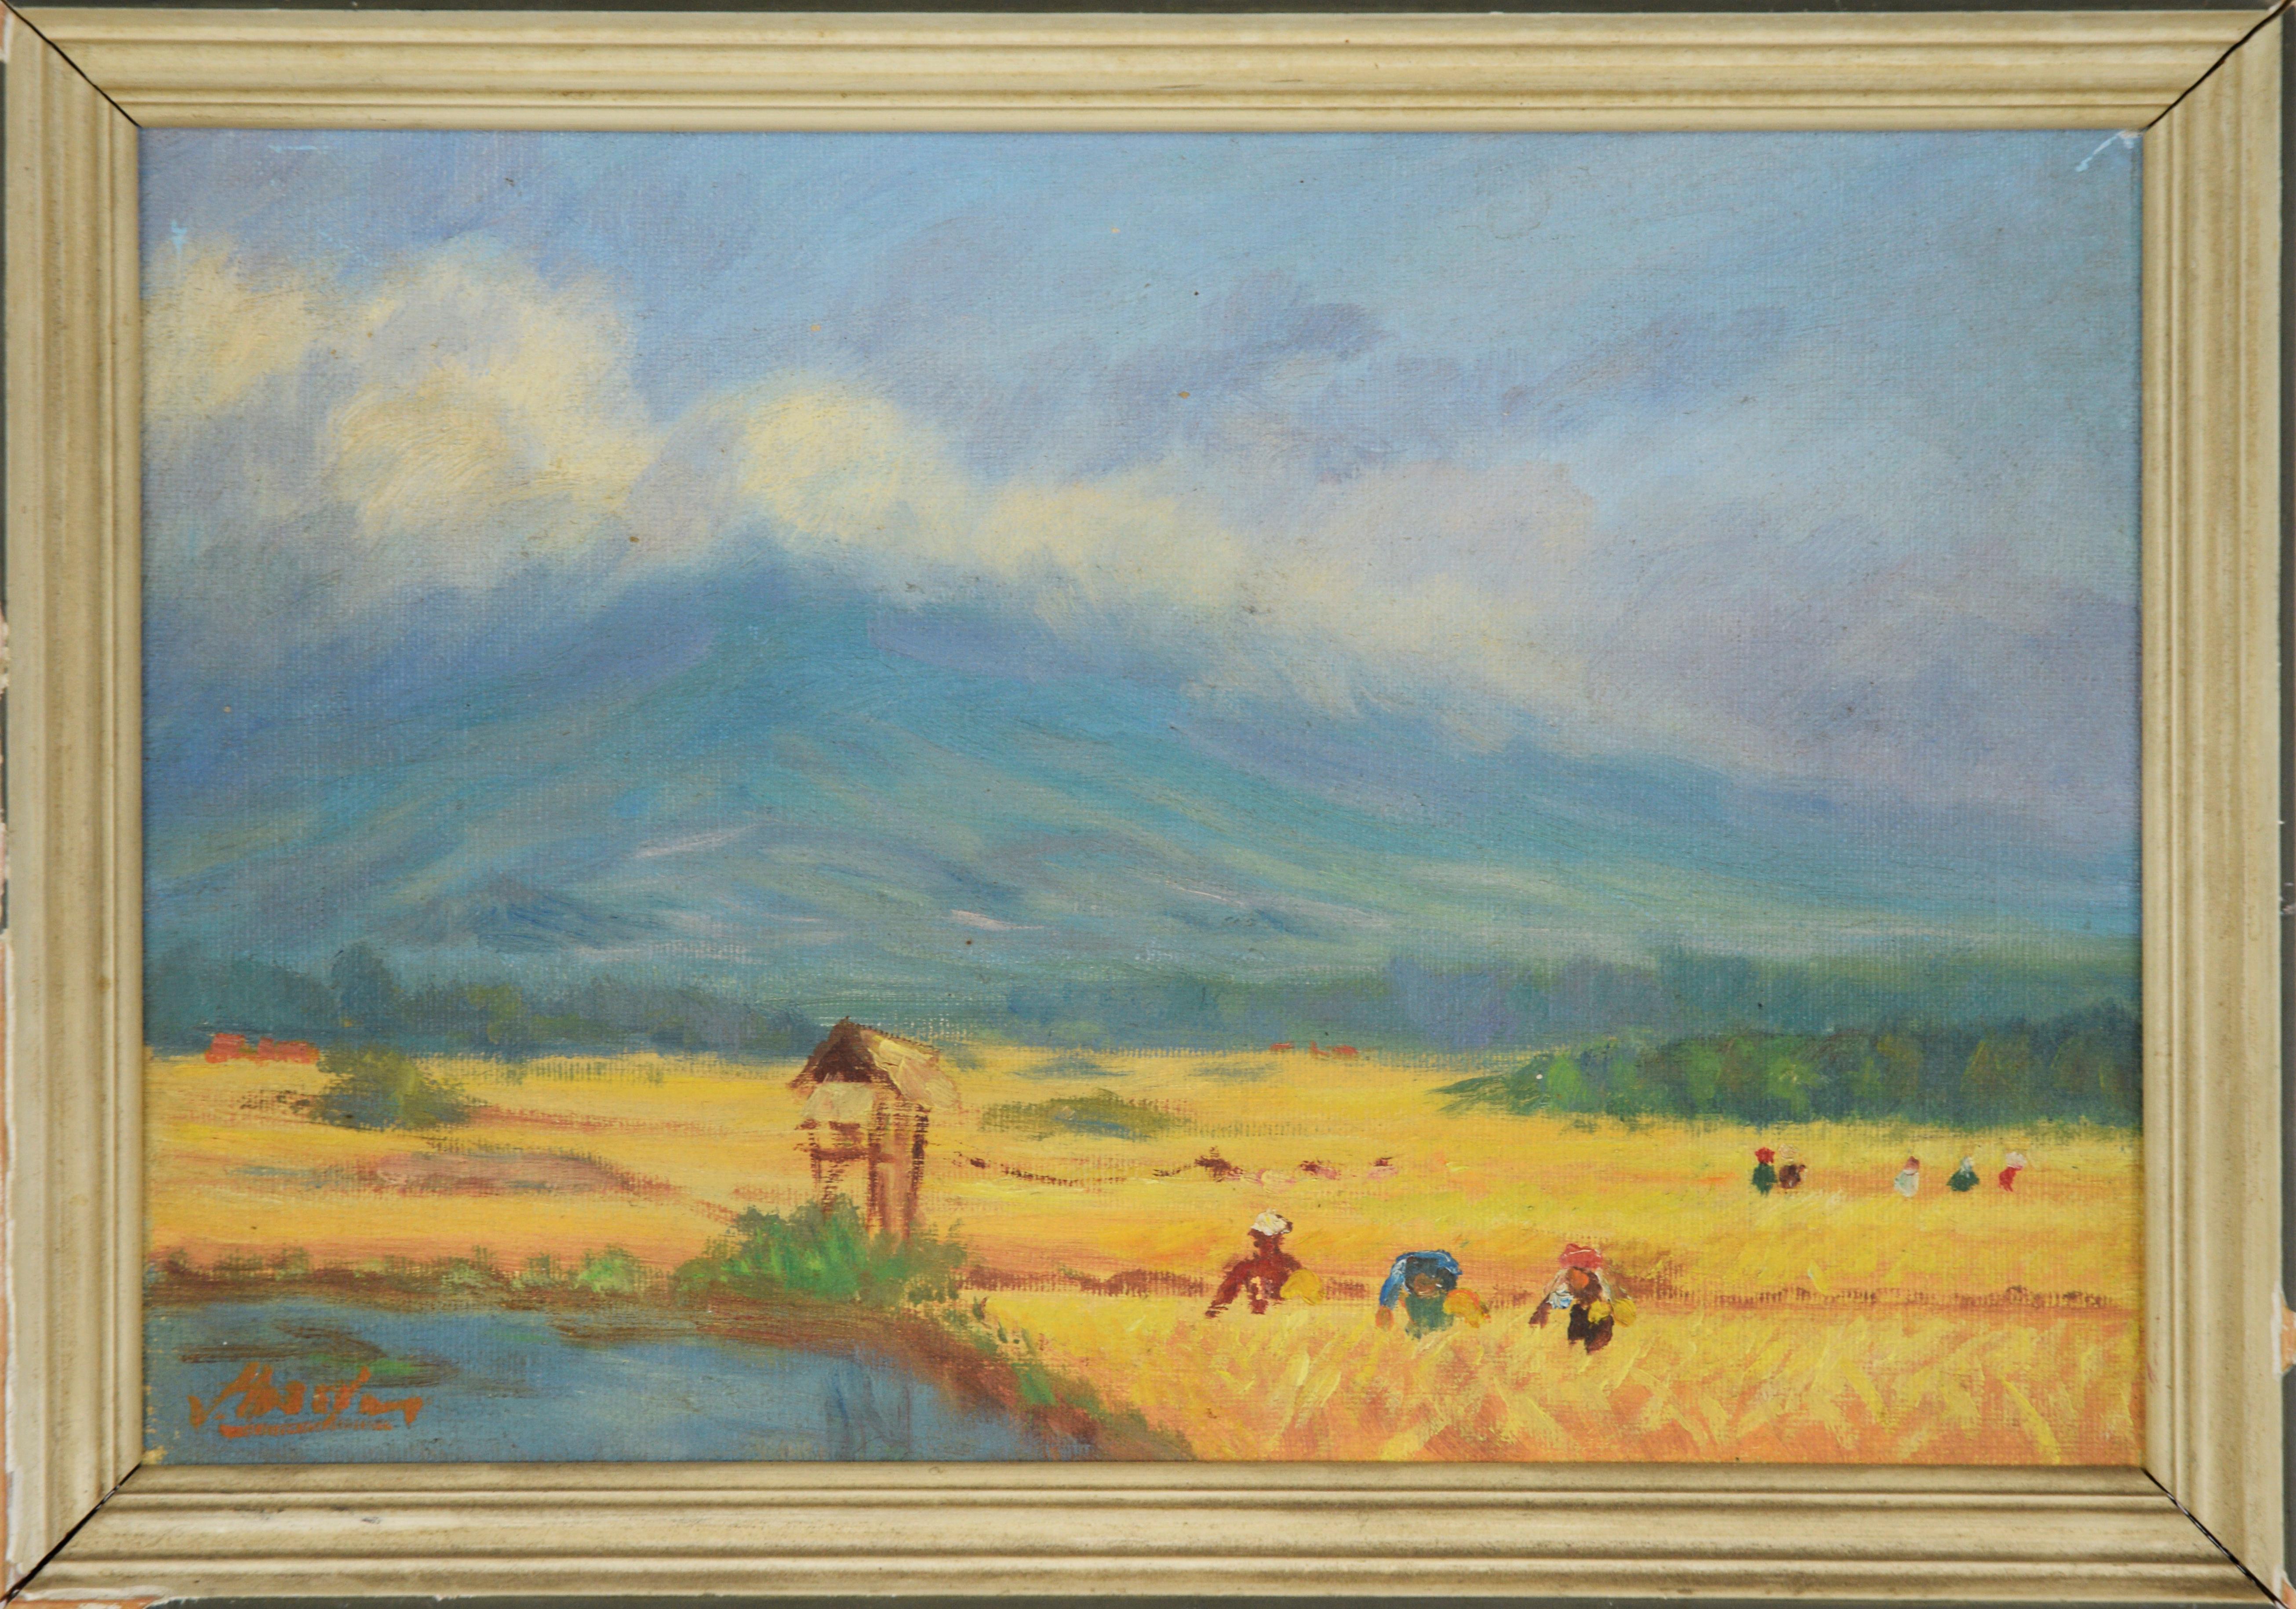 Landscape Painting Von Hassler - La moisson - Scène de ferme néerlandaise, peinture à l'huile originale sur toile